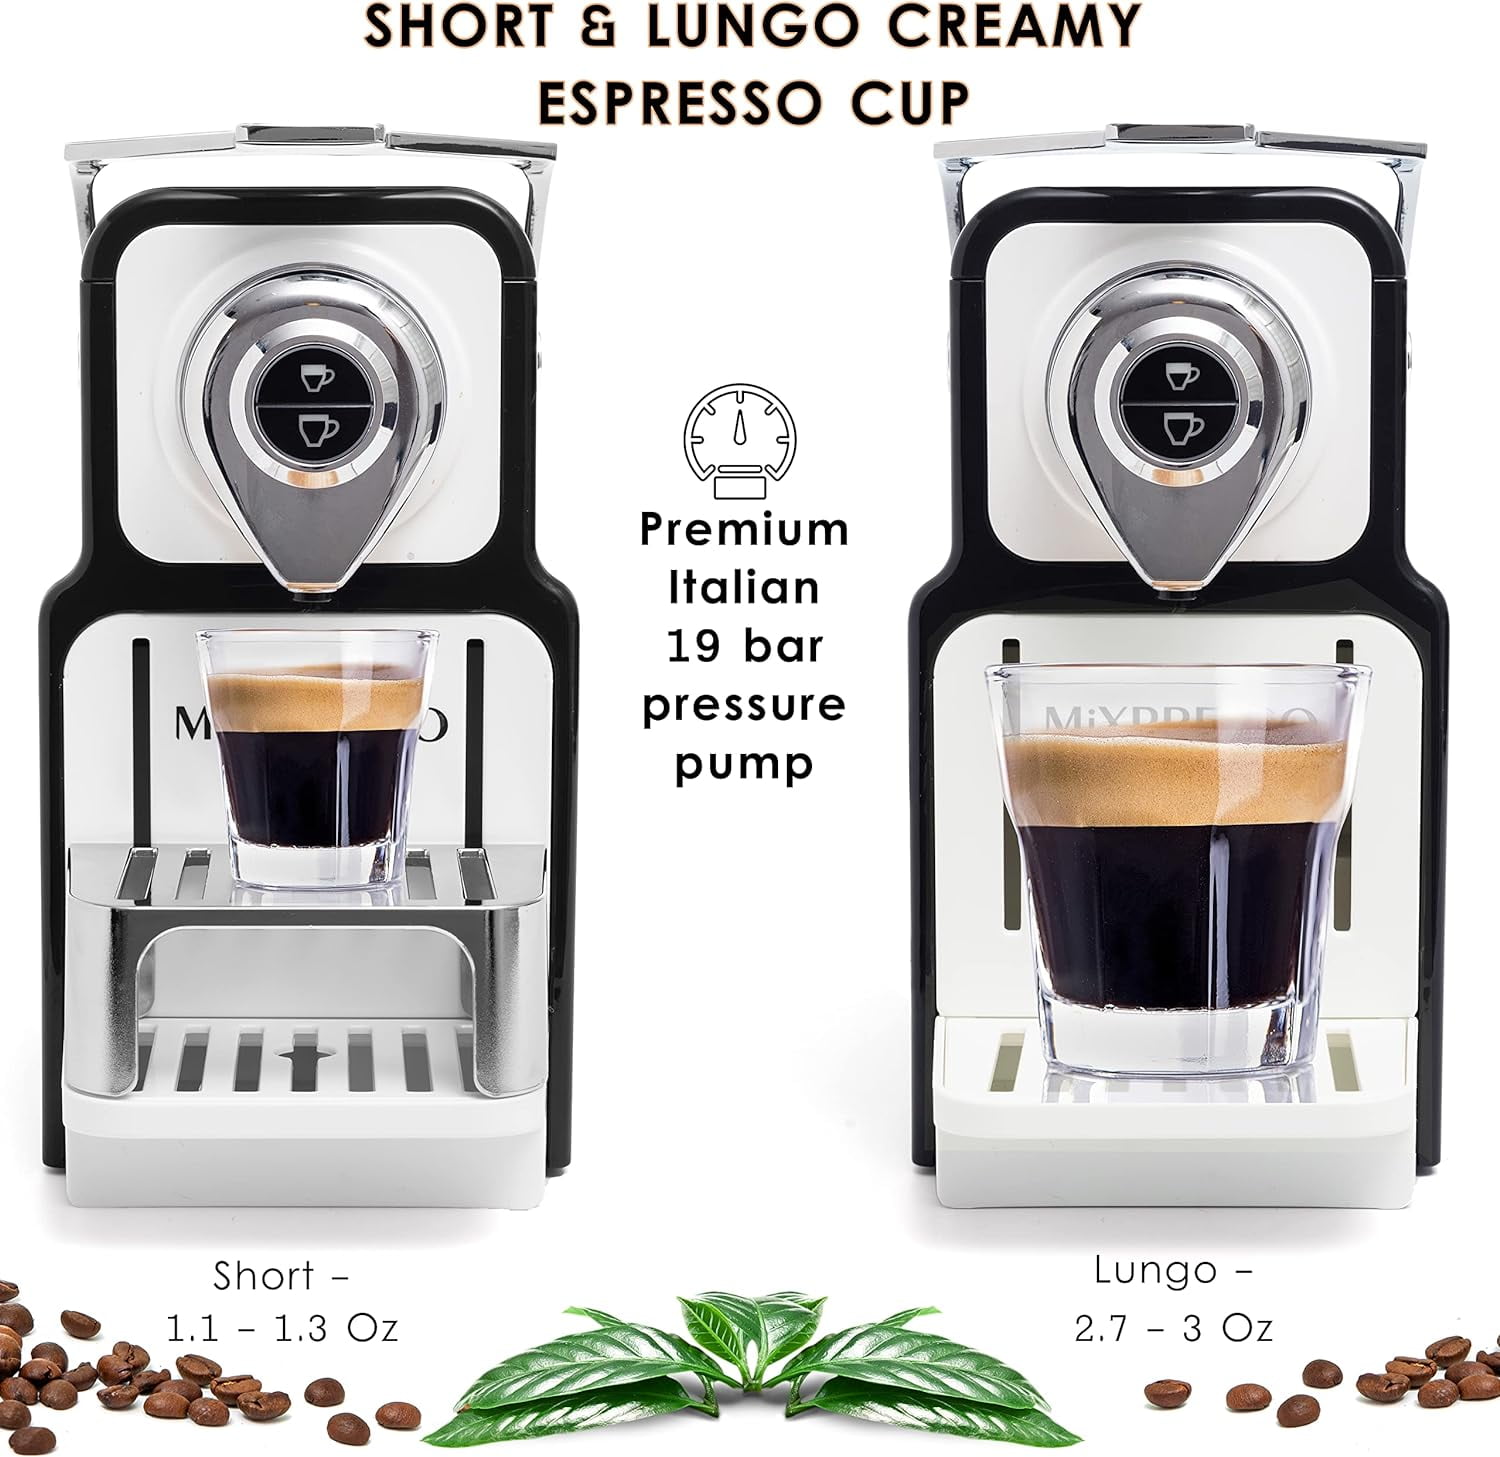 Mixpresso Máquina de café expreso para cápsulas compatibles con Nespresso,  cafetera de una sola porción programable para cápsulas de espresso, bomba